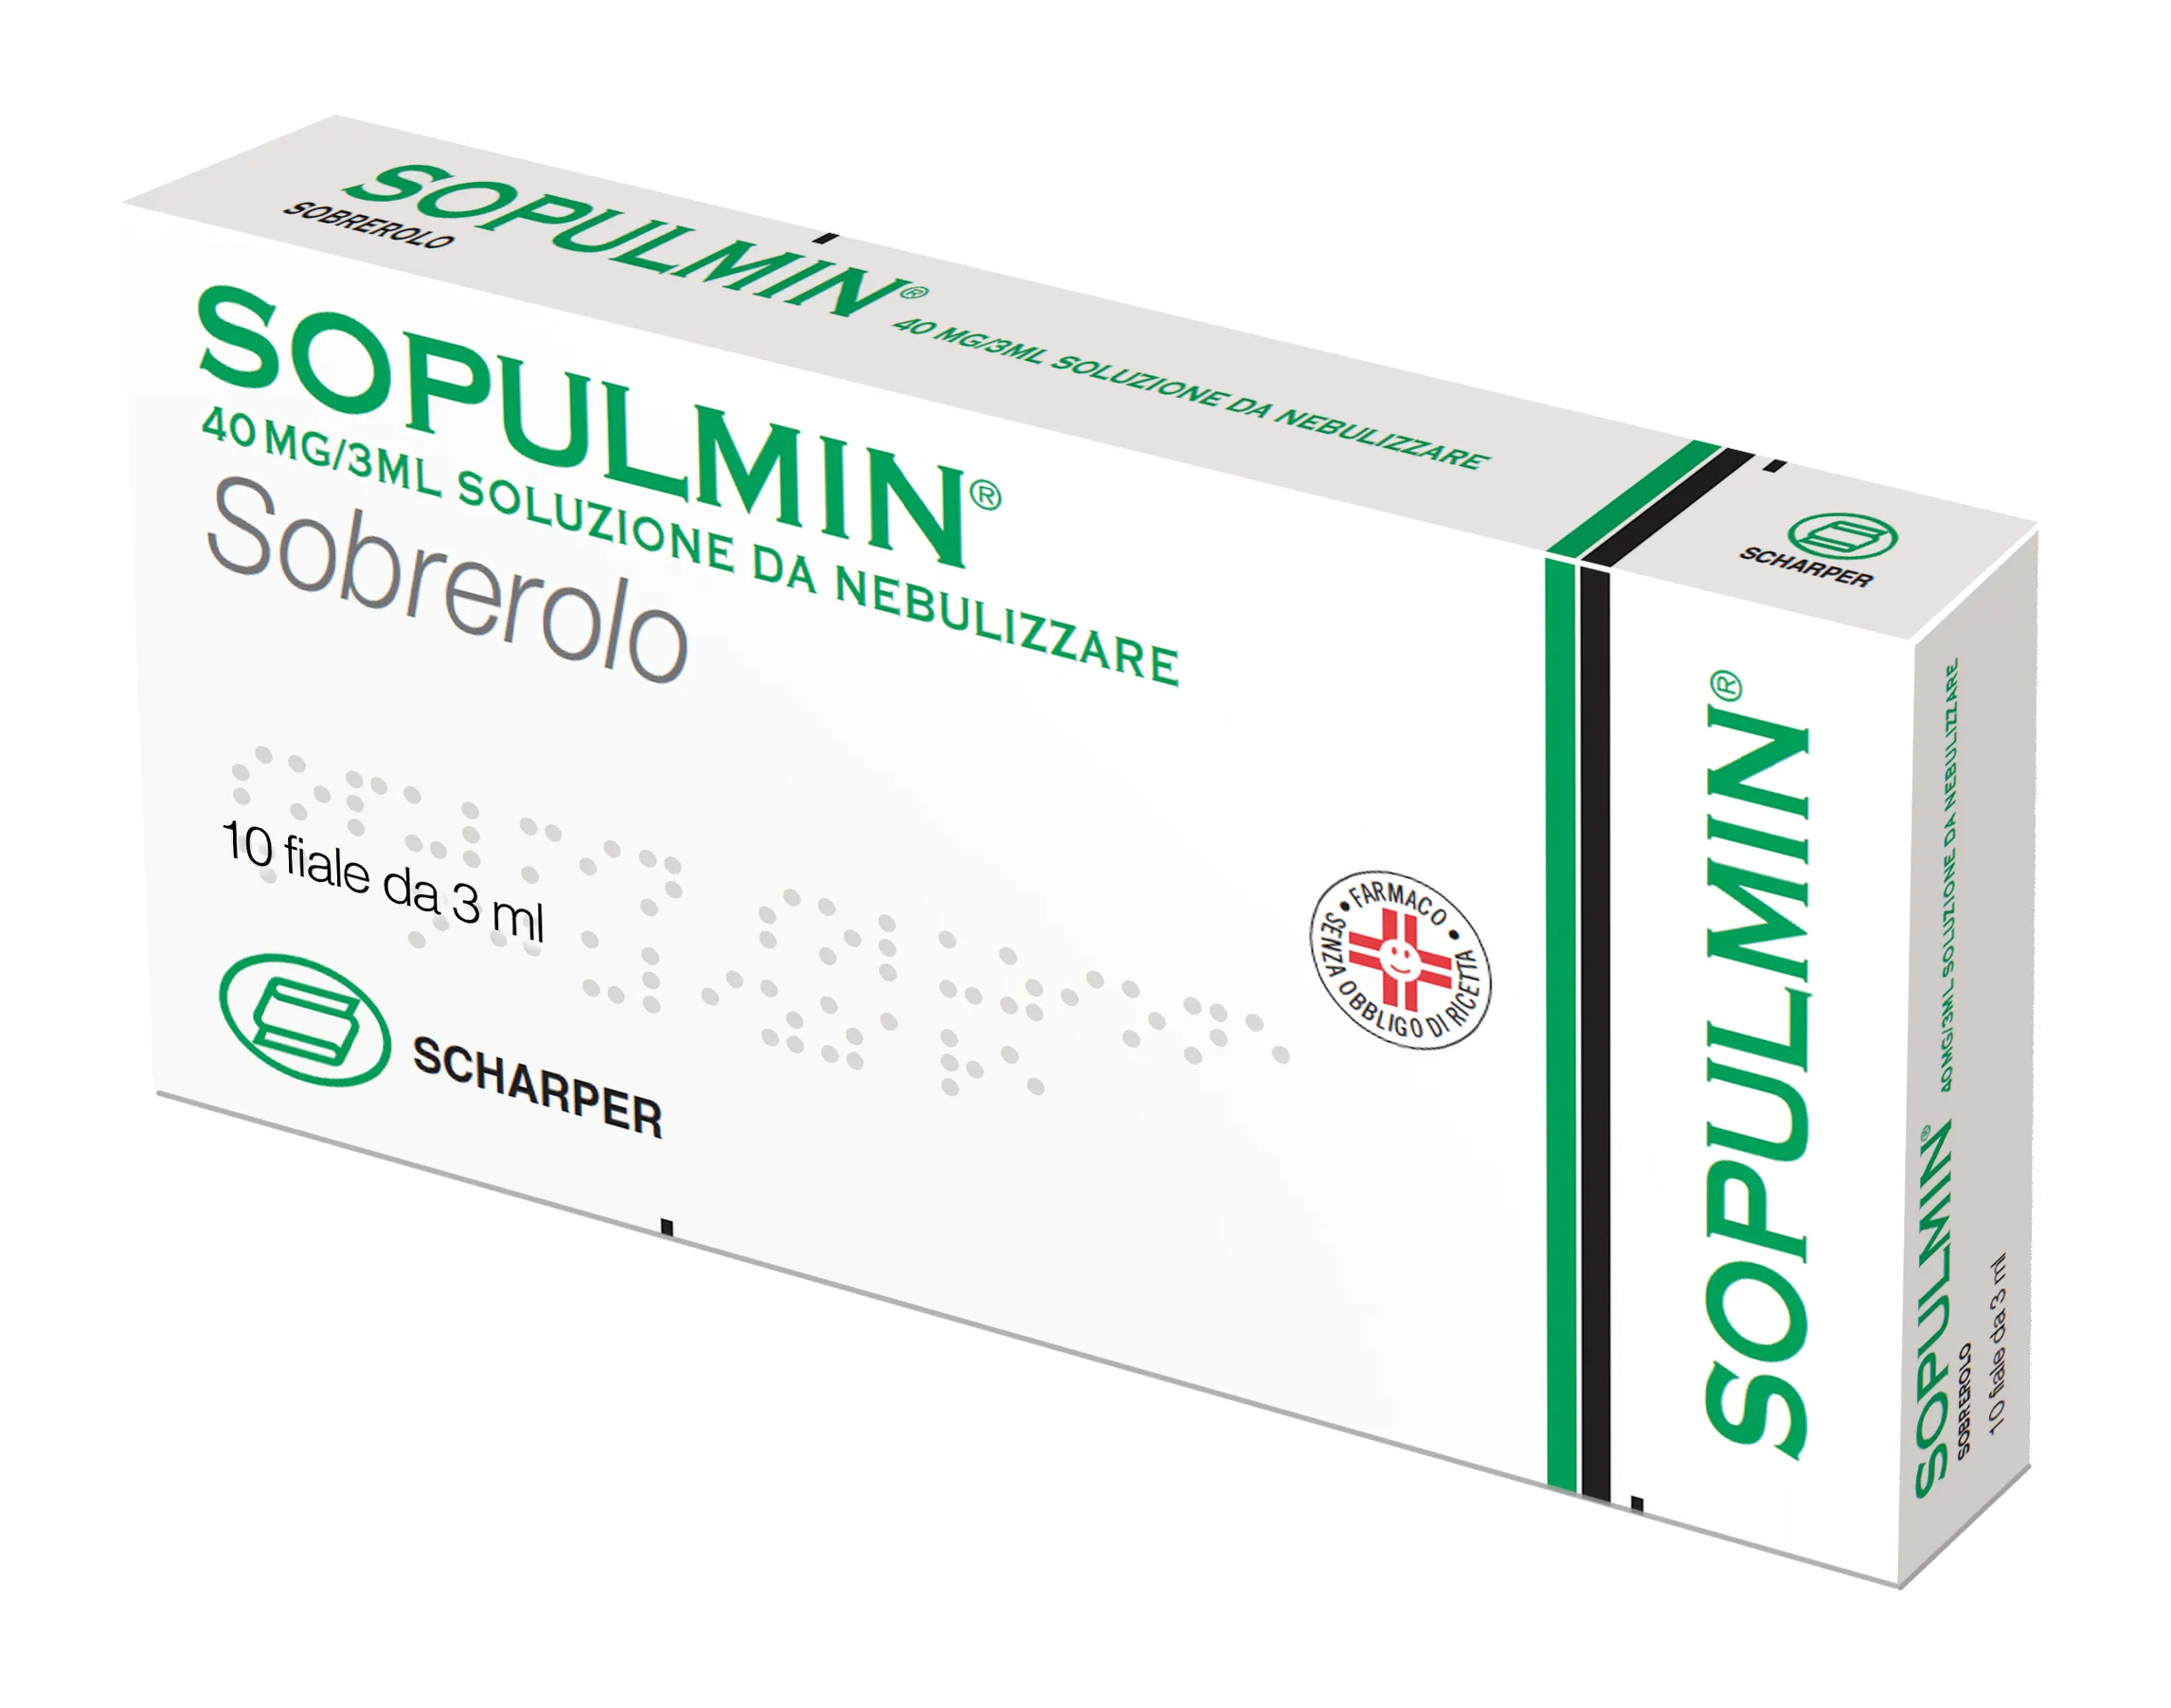 Sopulmin Nebul 10F 3 ml 40 mg